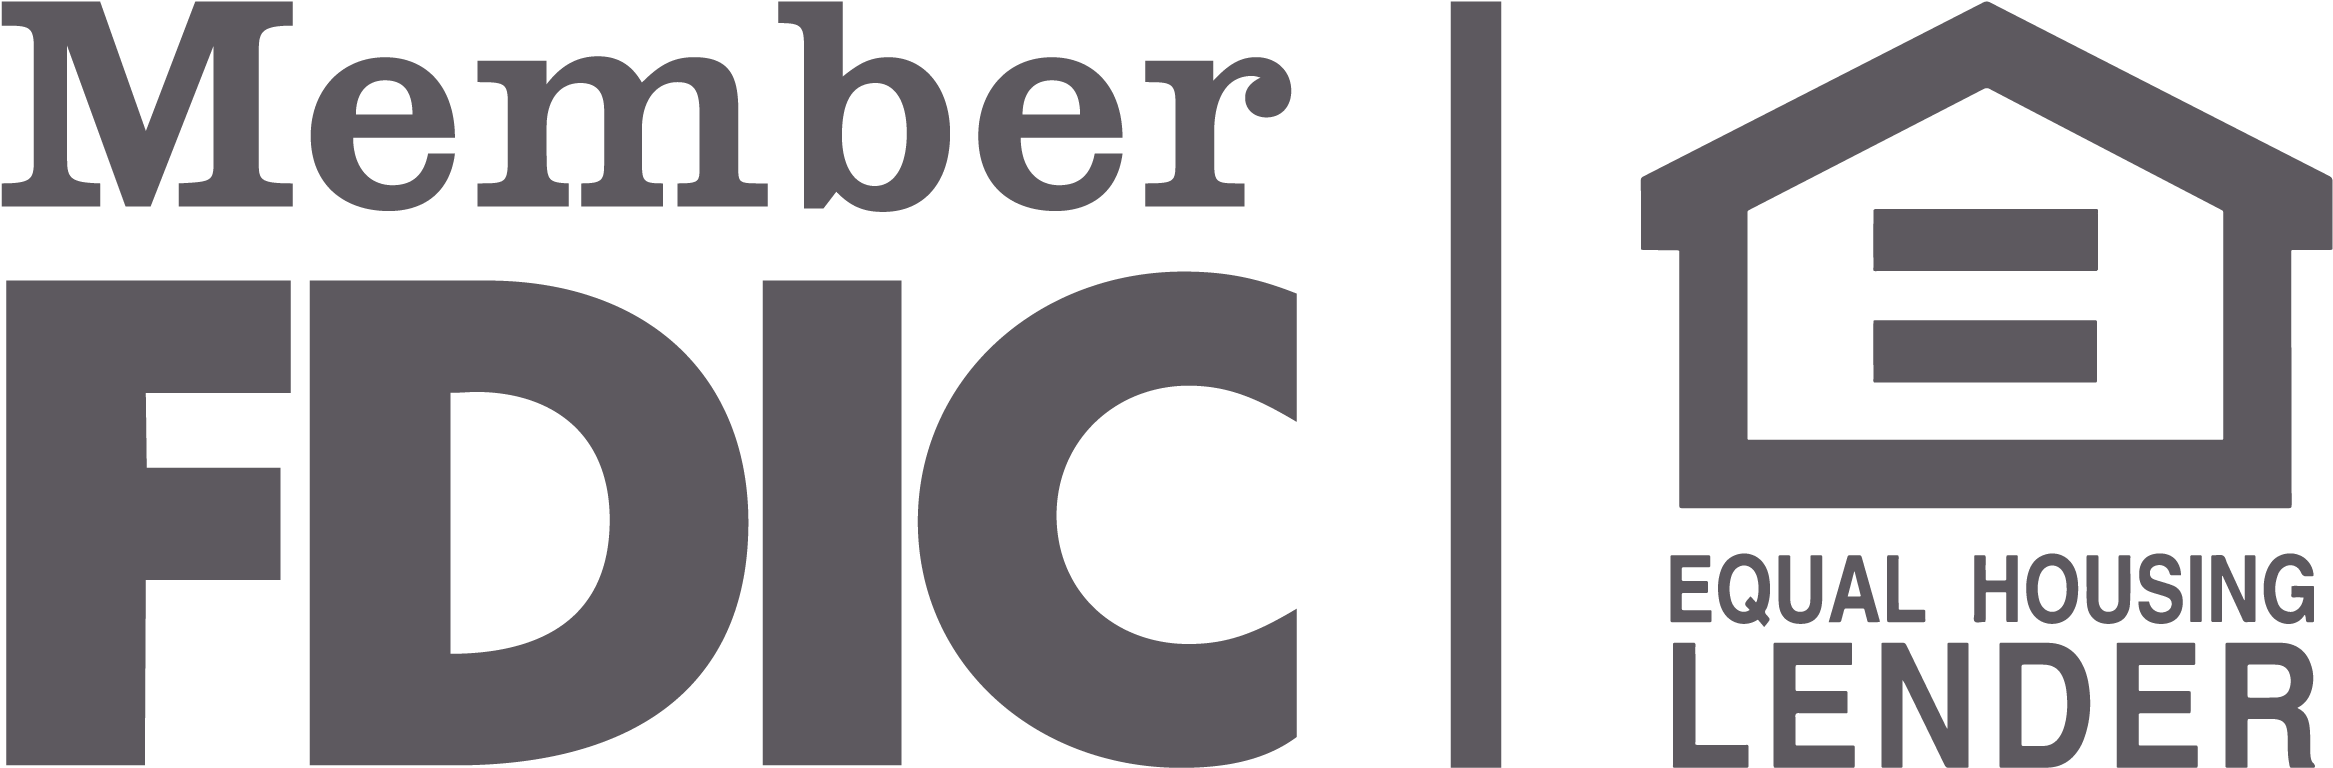 Member FDIC logo and Equal Opportunity Lender logo